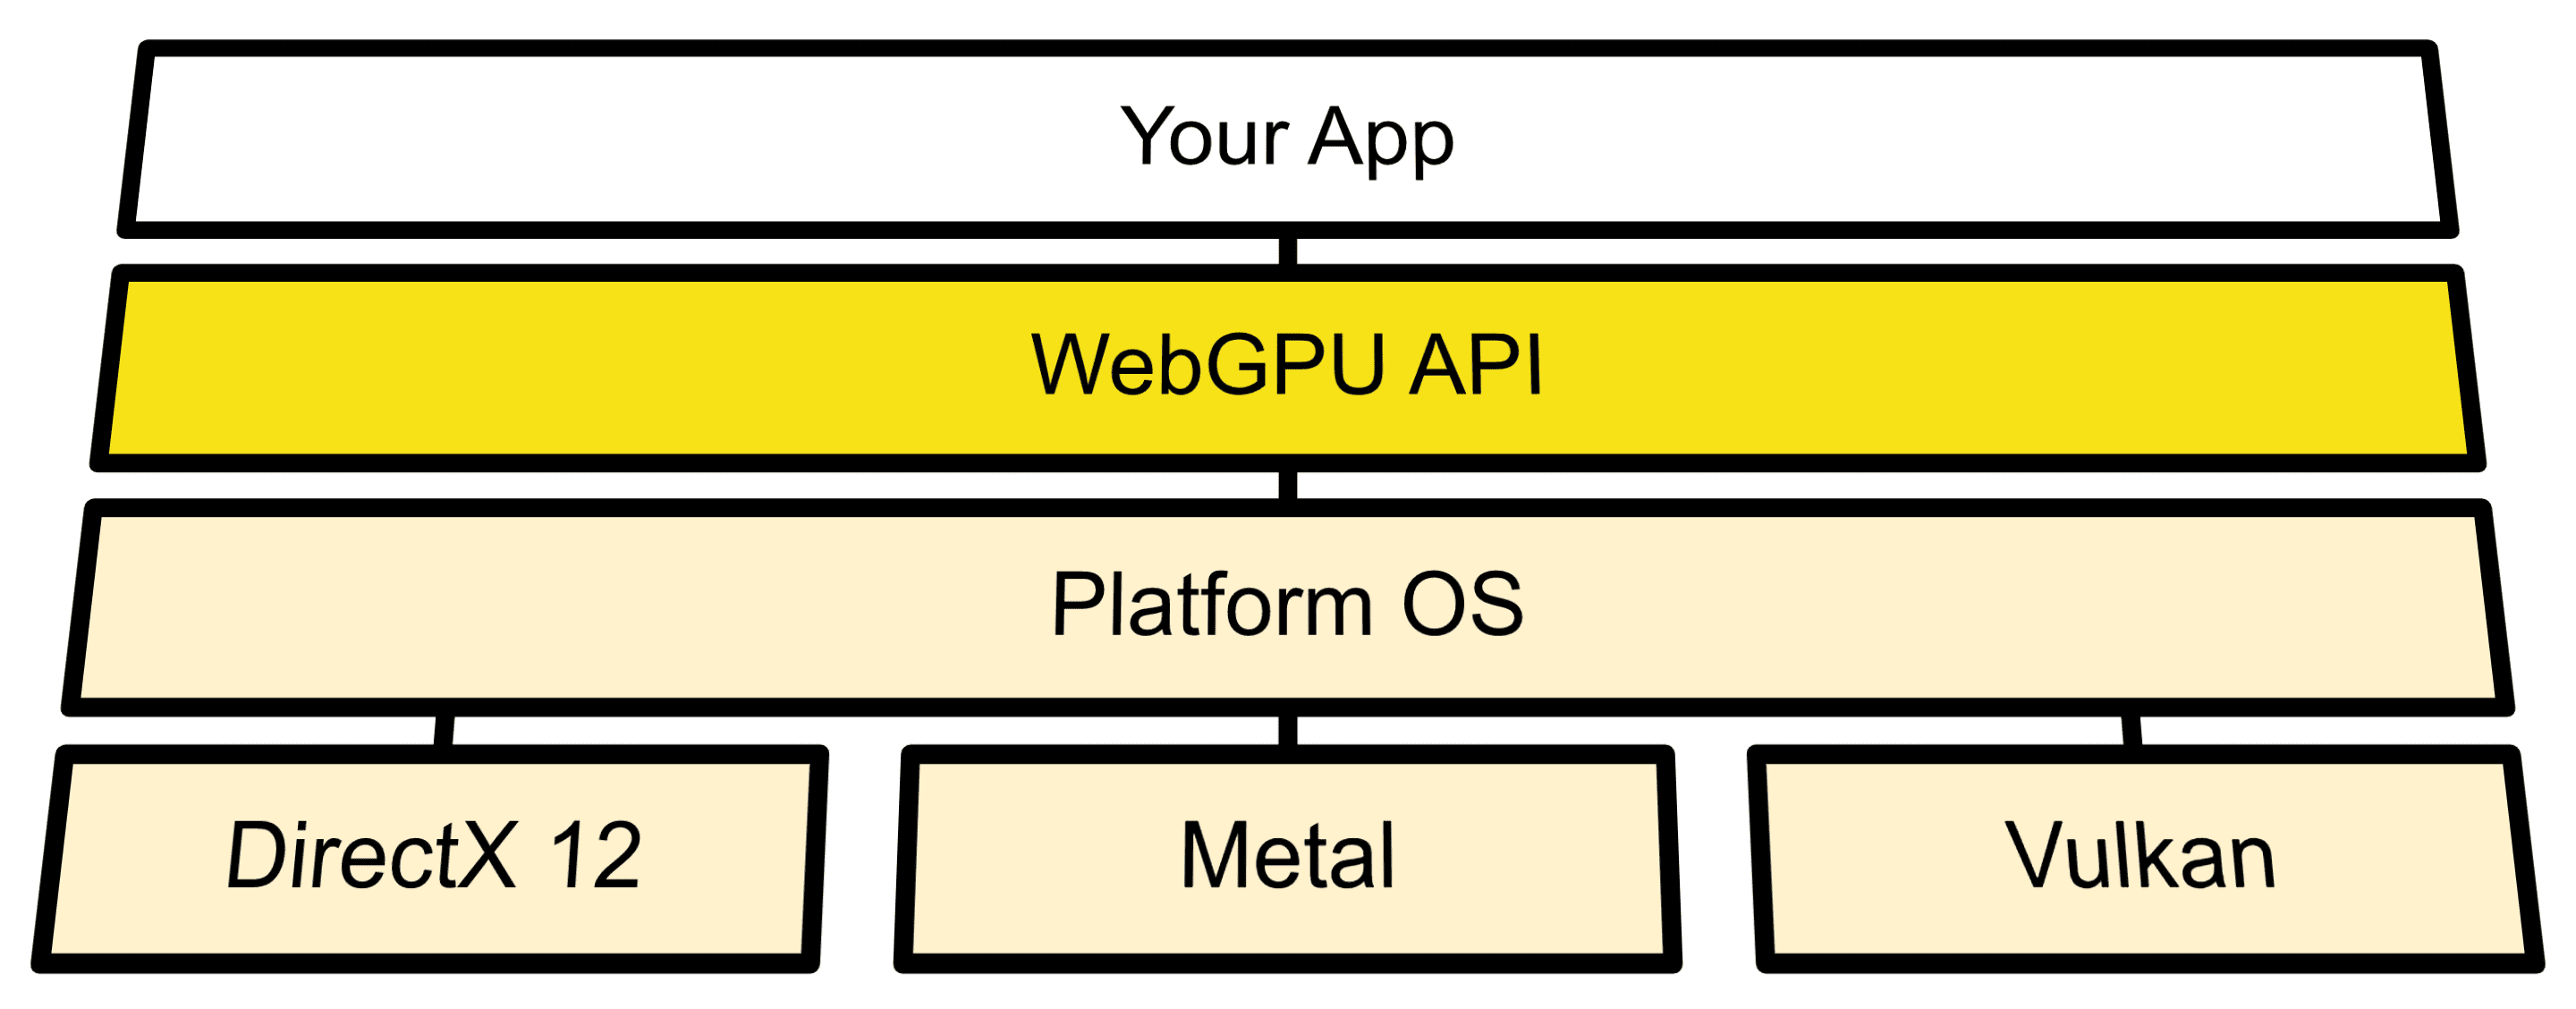 مخطَّط هندسي يعرض اتصال وحدات WebGPU بين واجهات برمجة تطبيقات نظام التشغيل وDirect3D 12 وMetal وVulkan